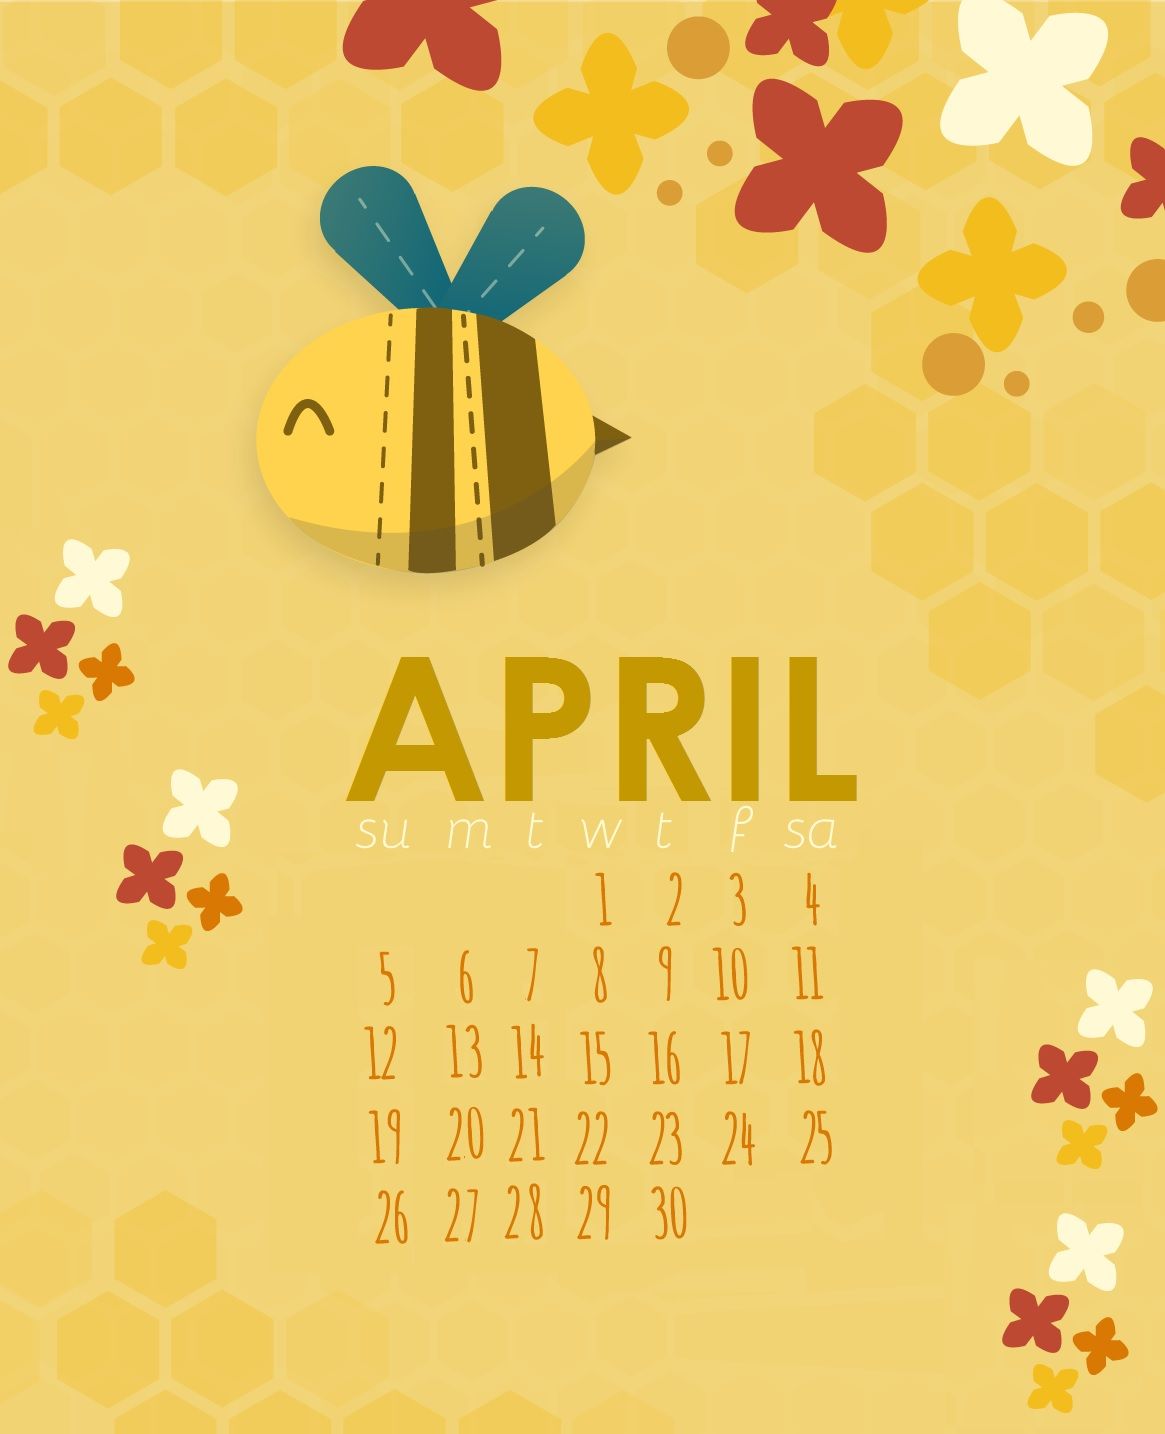 April 2018 Bird Calendar Wallpaper  Sarah Hearts